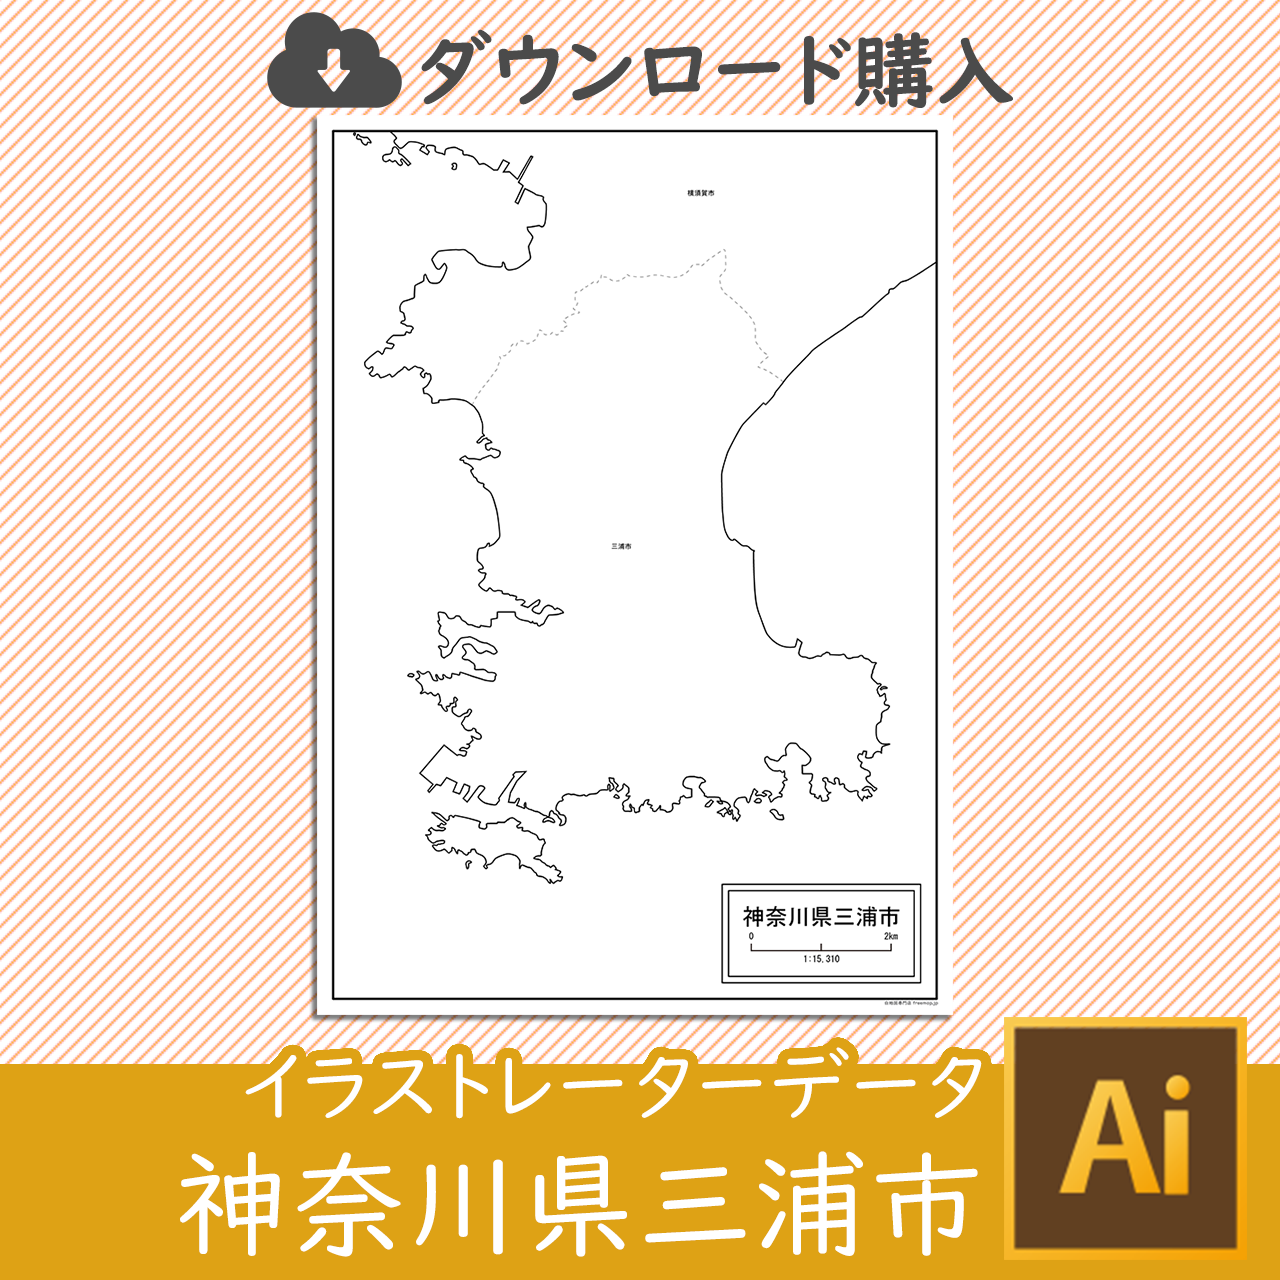 三浦市のaiデータのサムネイル画像